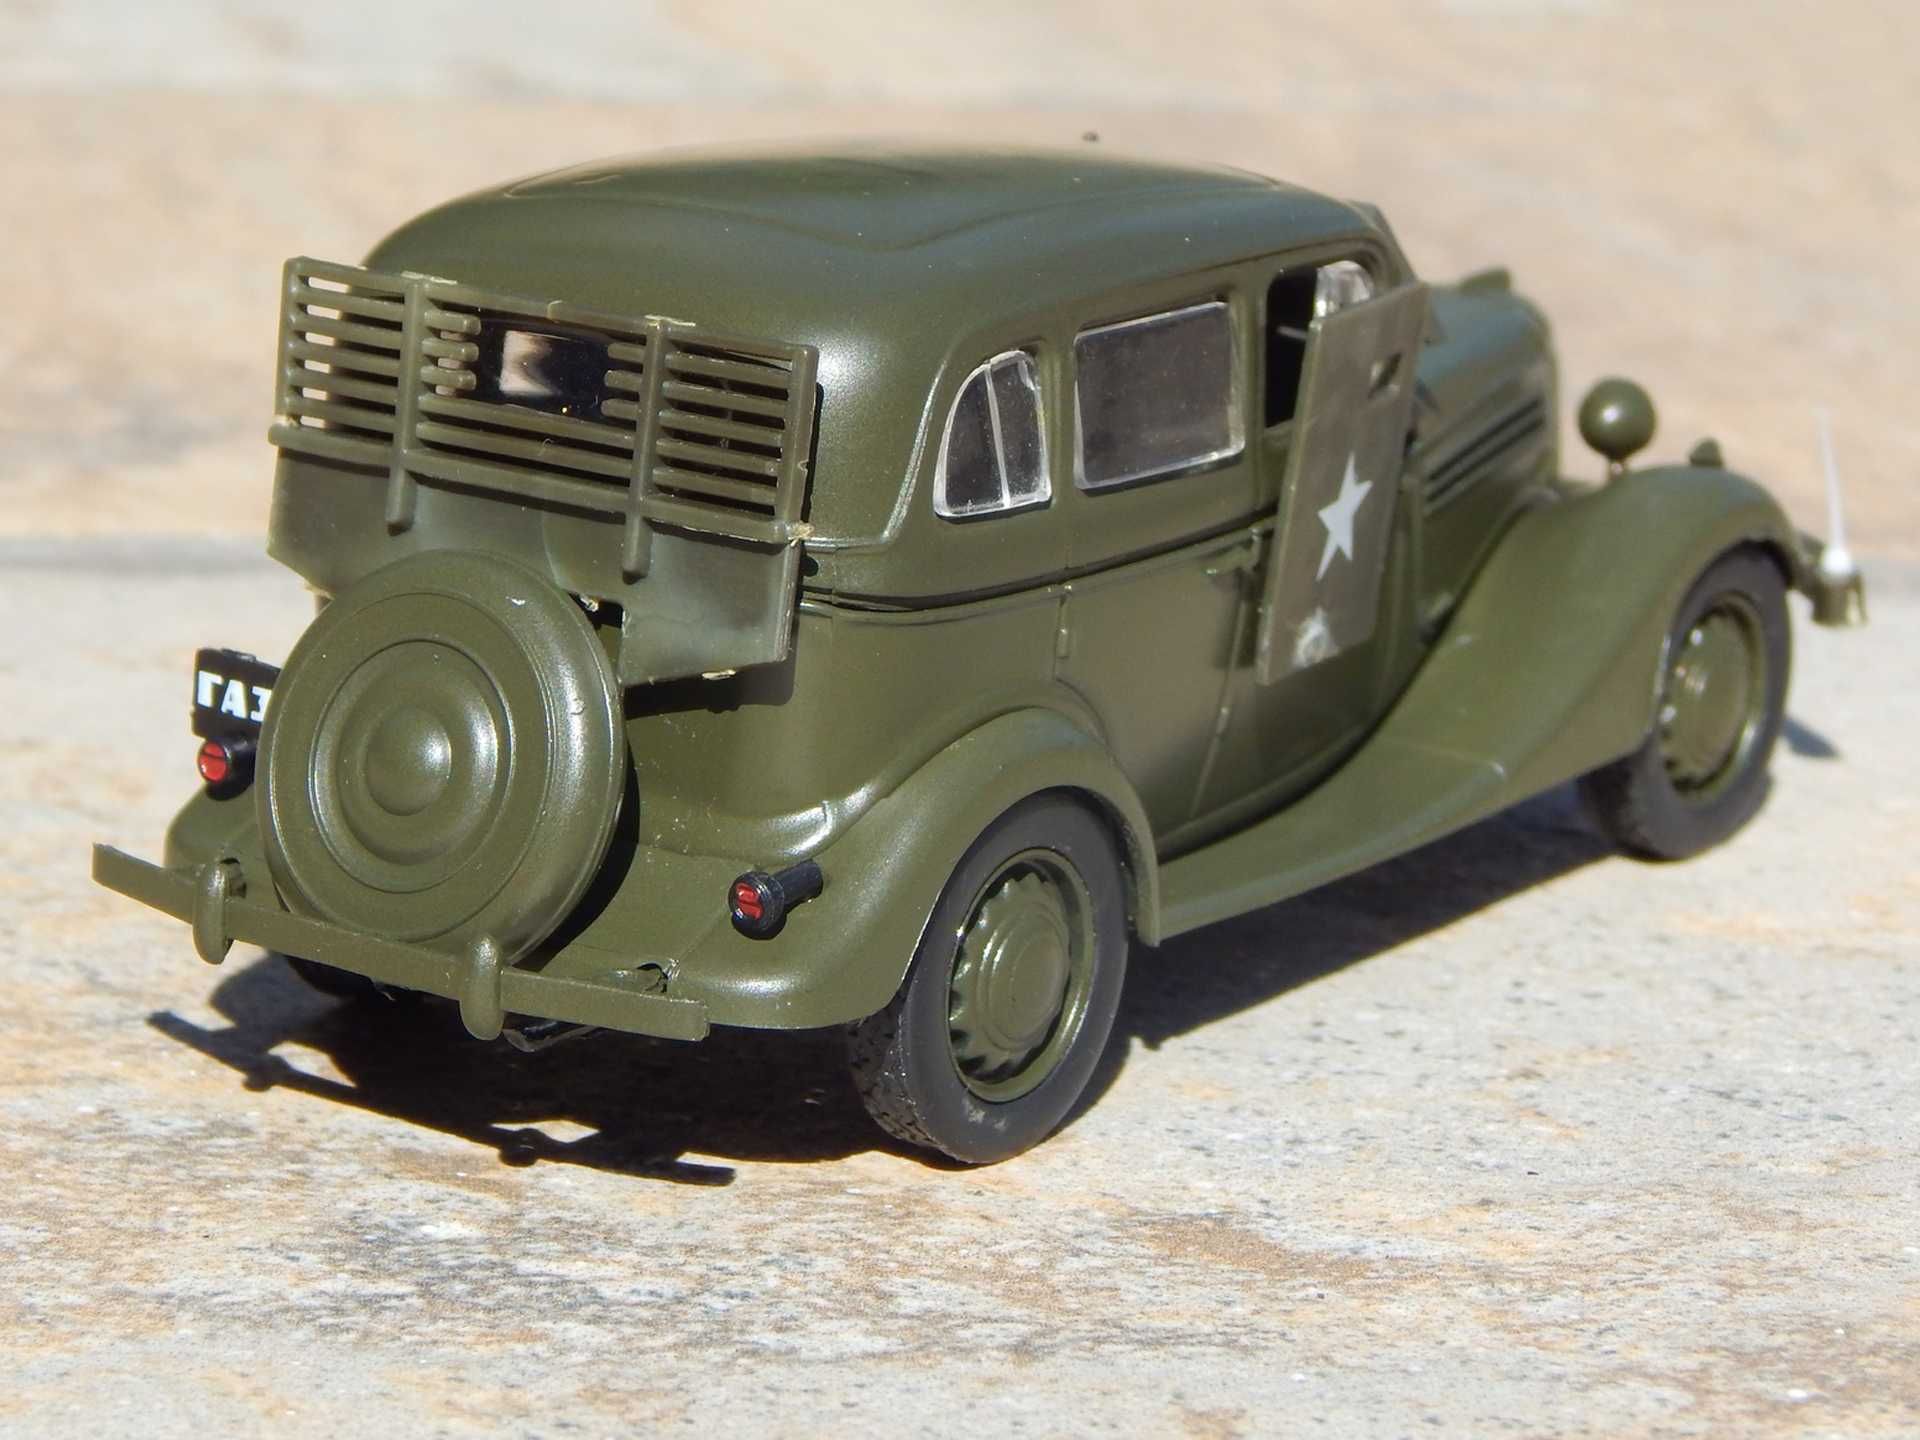 Macheta auto epoca militara GAZ 61-73 (Ford Model B) 1940 1:43